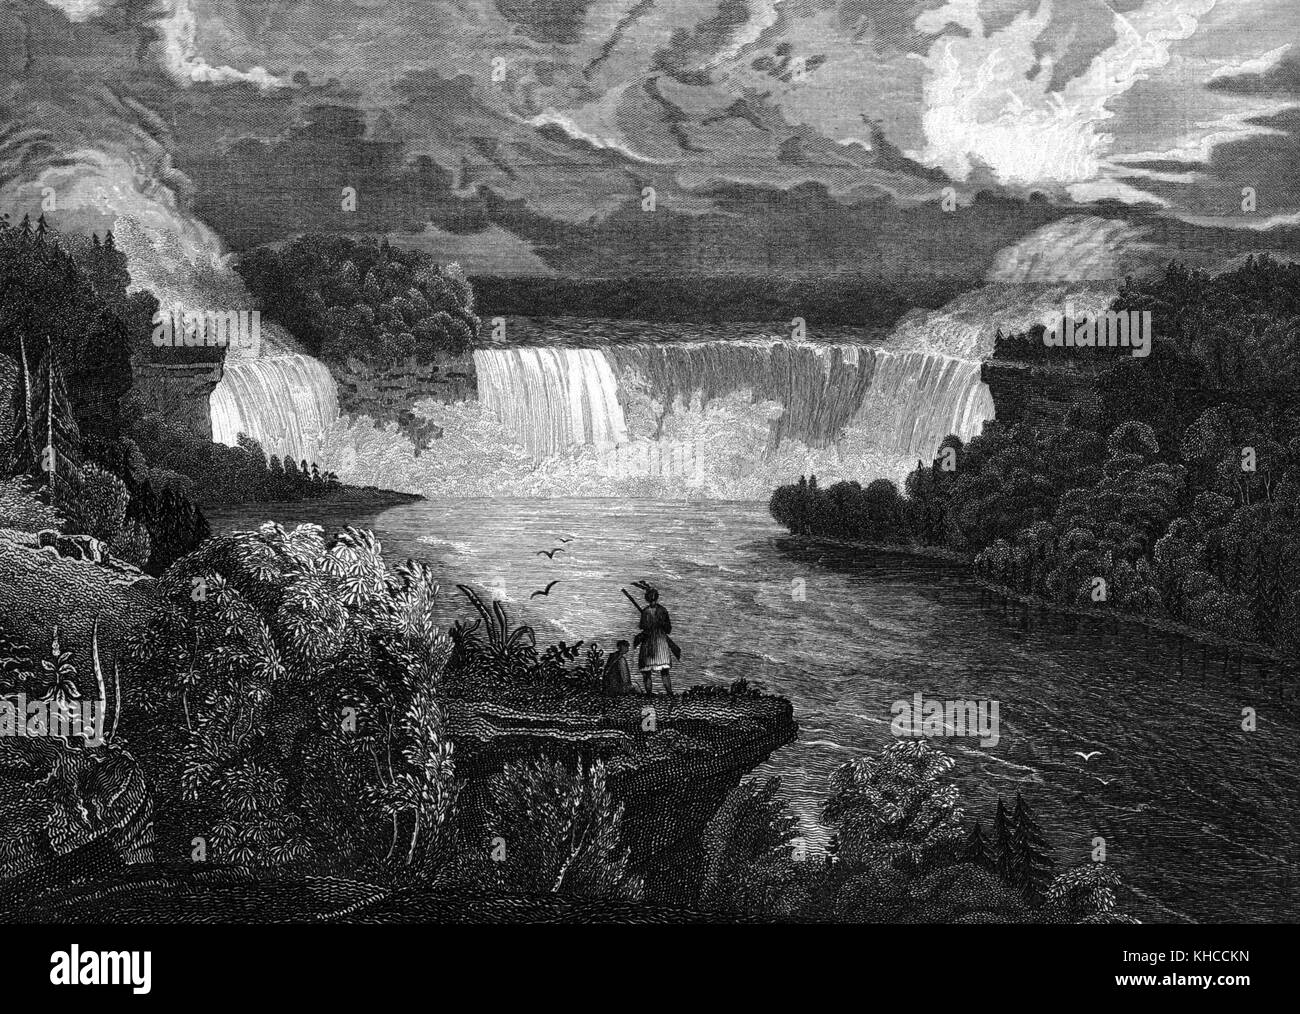 Gravure d'une peinture des chutes du Niagara du côté de New York, un amérindien est représenté debout sur une affleurement de la rivière tenant un fusil, le paysage de la peinture se compose de forêts et d'eau courante, New York, 1826. De la bibliothèque publique de New York. Banque D'Images